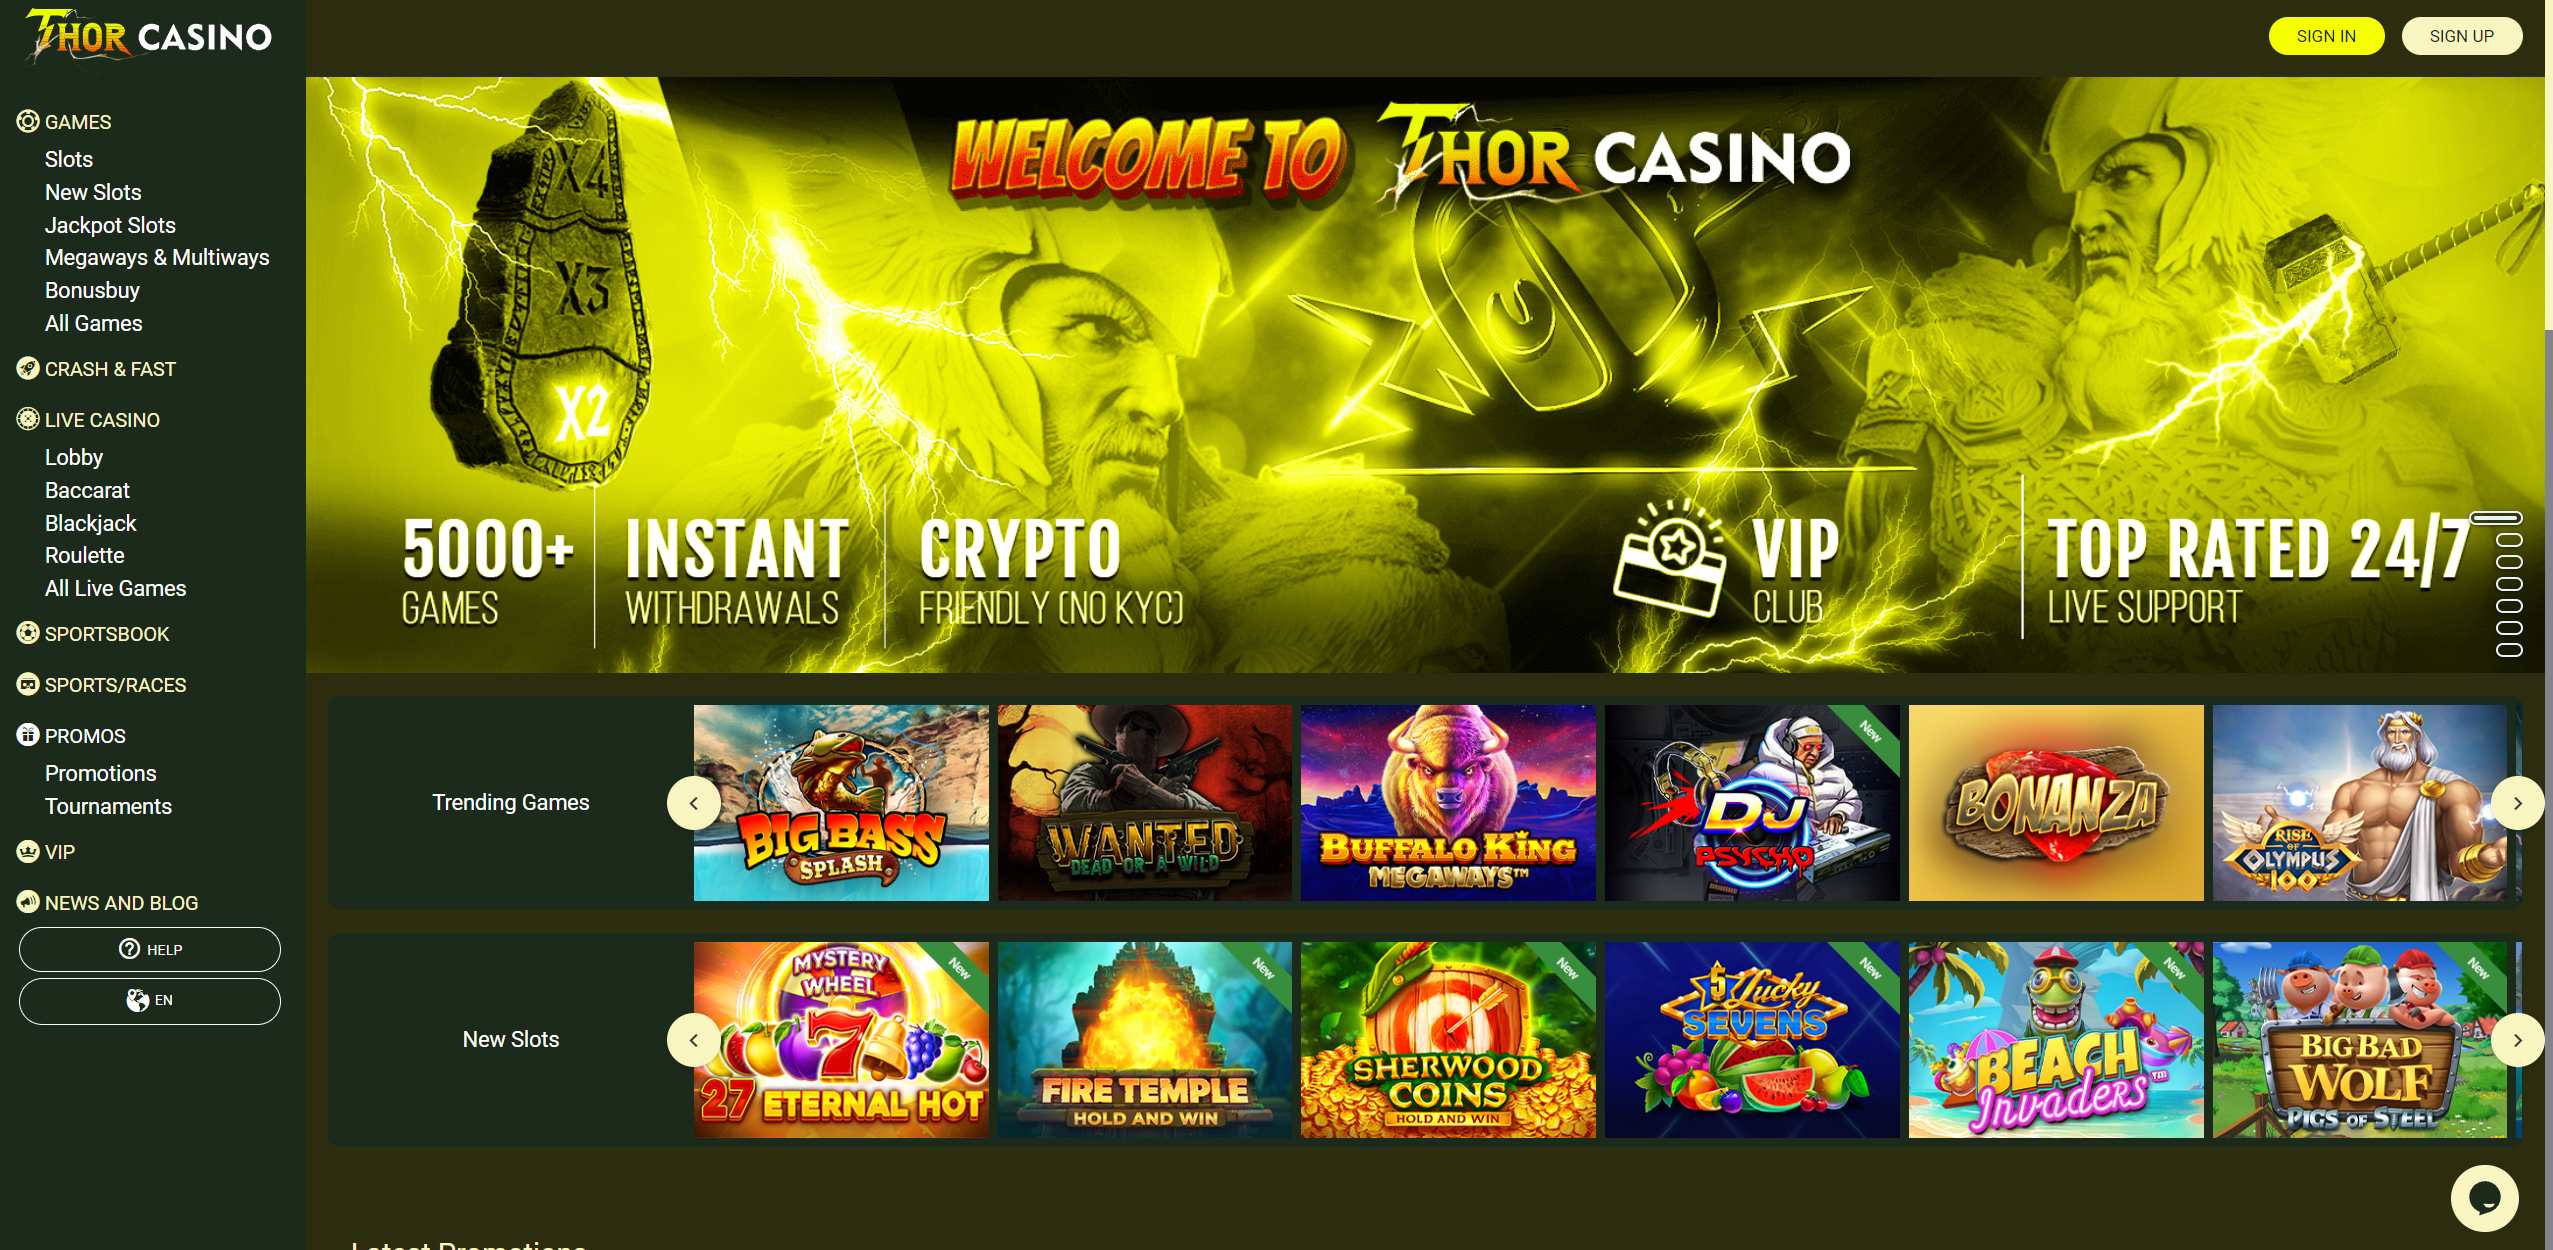 Thor Casino Design